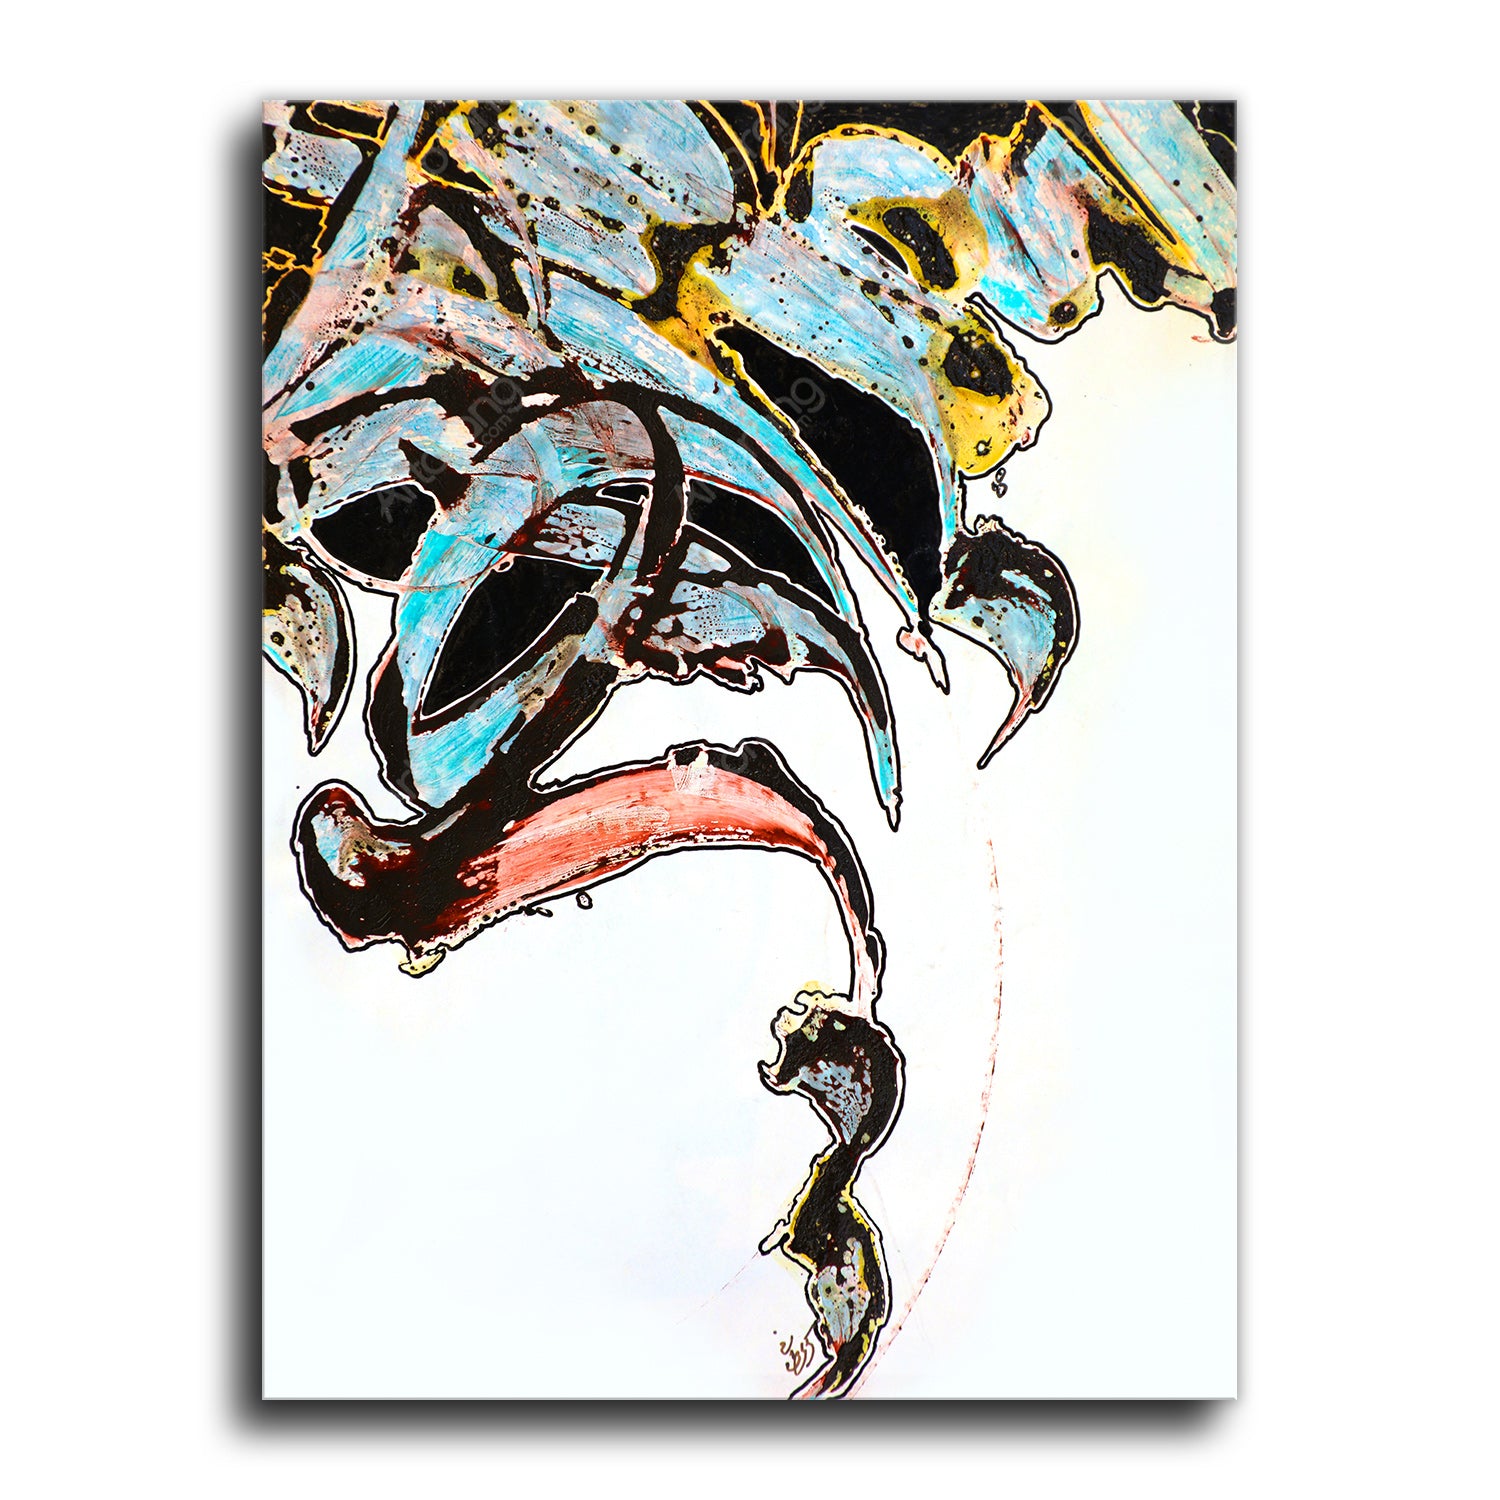 Colorful abstract and contemporary wall art painting print - Artorang